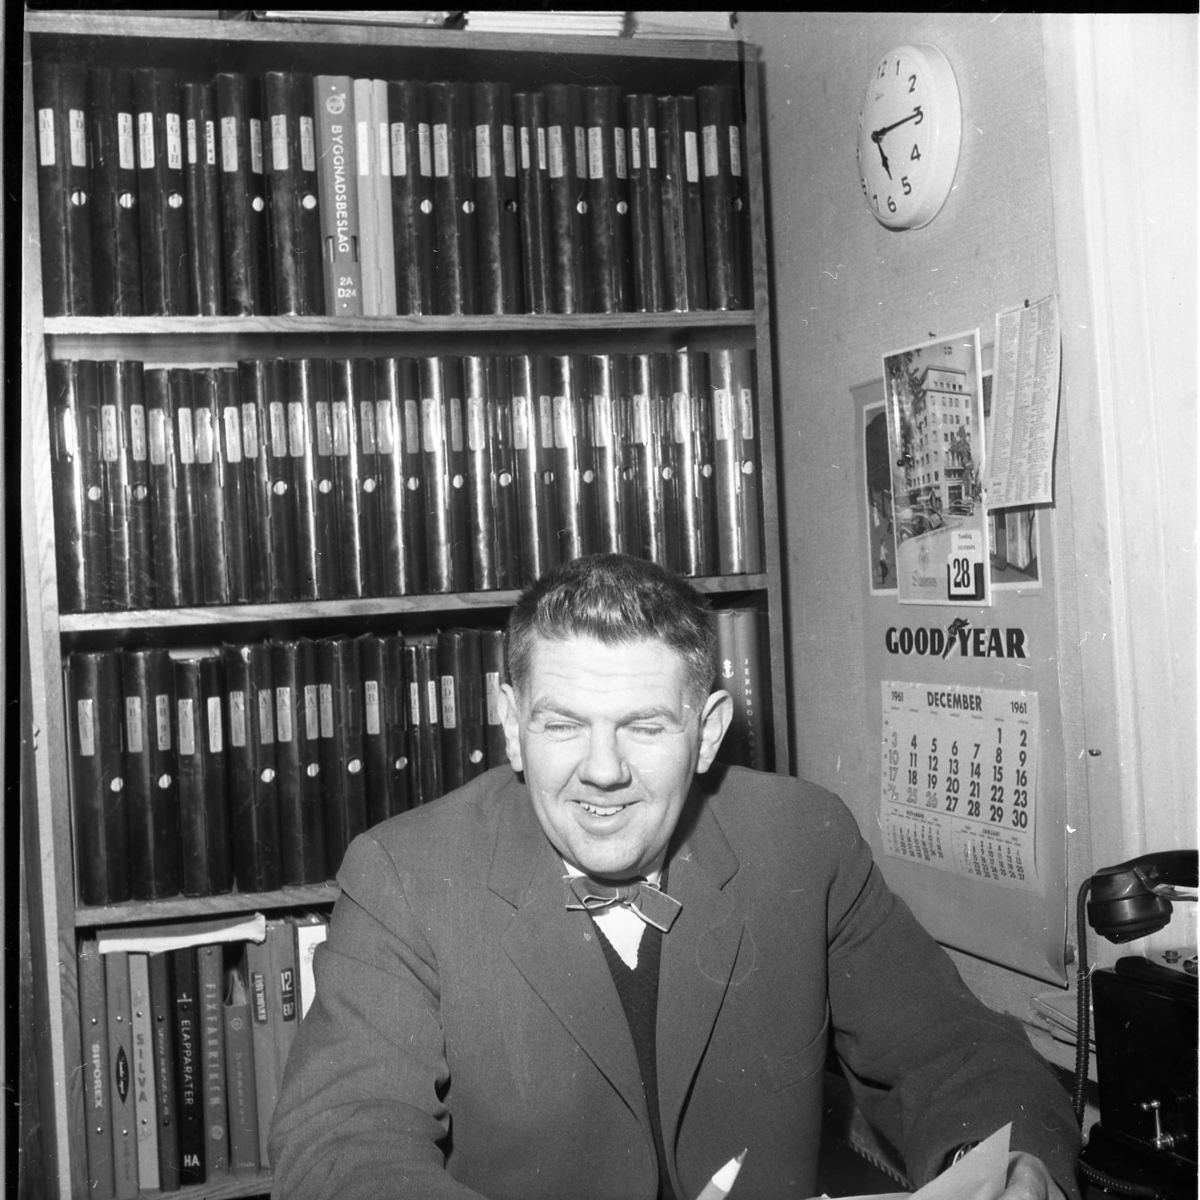 En man sitter på ett kontor. Bakom sig har han en bokhylla fylld med pärmar. Han ser glad ut.